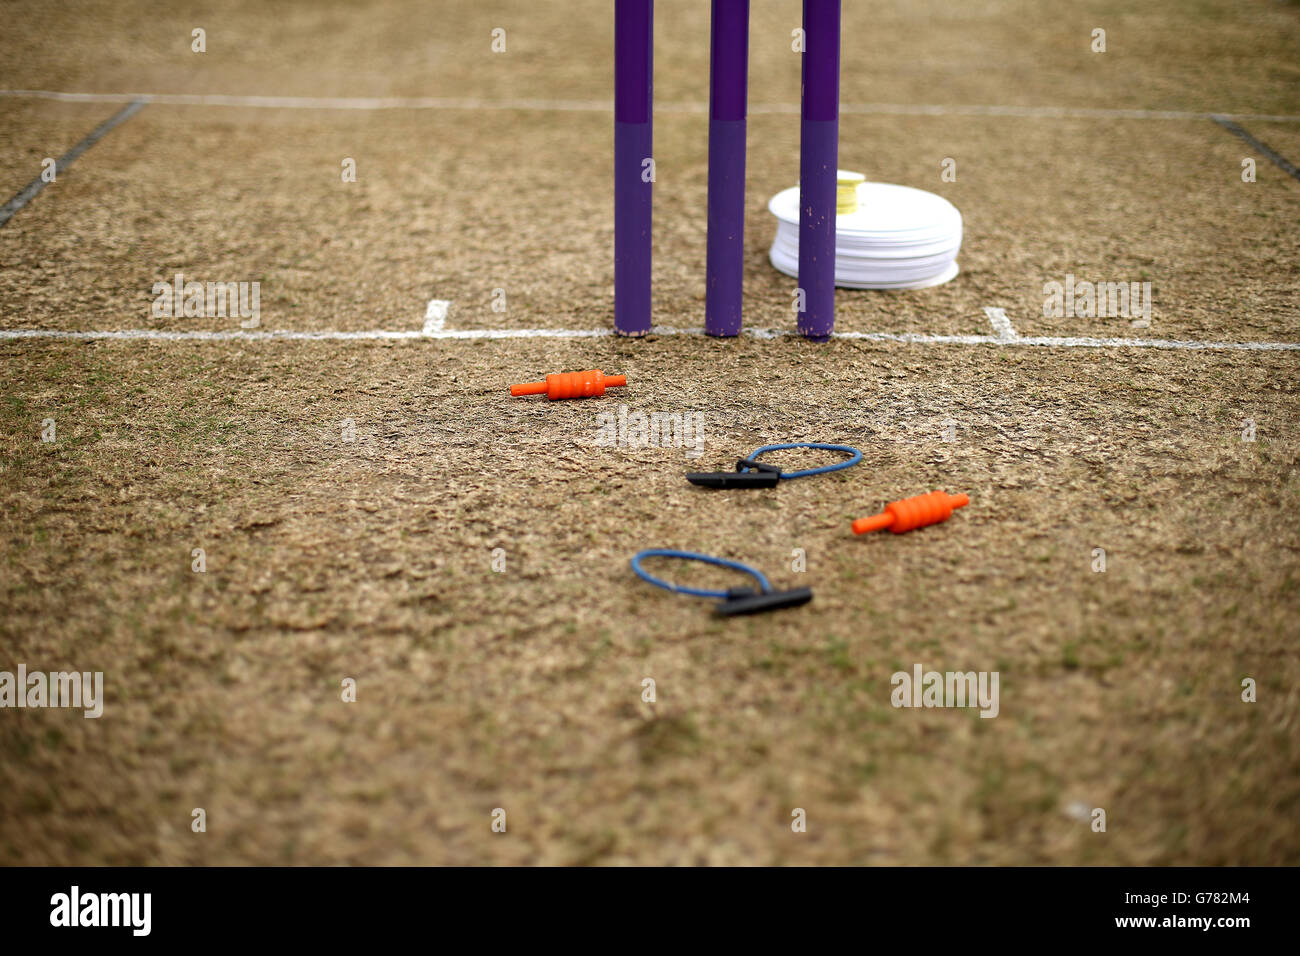 Cricket - Royal London One Day Cup - Surrey v Glamorgan - Guildford Cricket Club. Dettaglio di ceppi di cricket e di chiodi Foto Stock